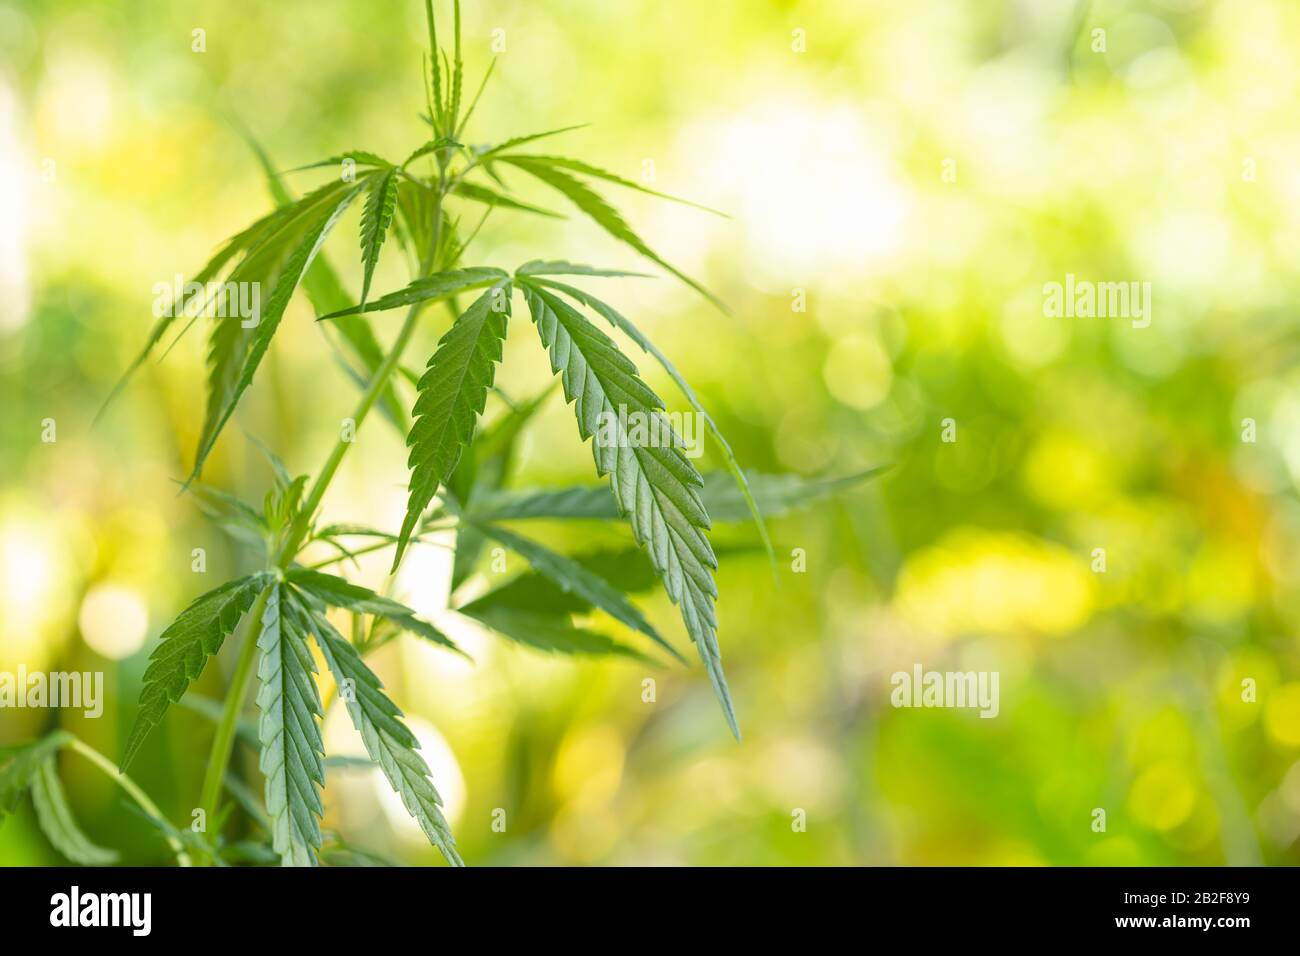 Gros plan jeune vert frais de marijuana arbre dans le jardin avec flou de la nature et fond bokeh Banque D'Images